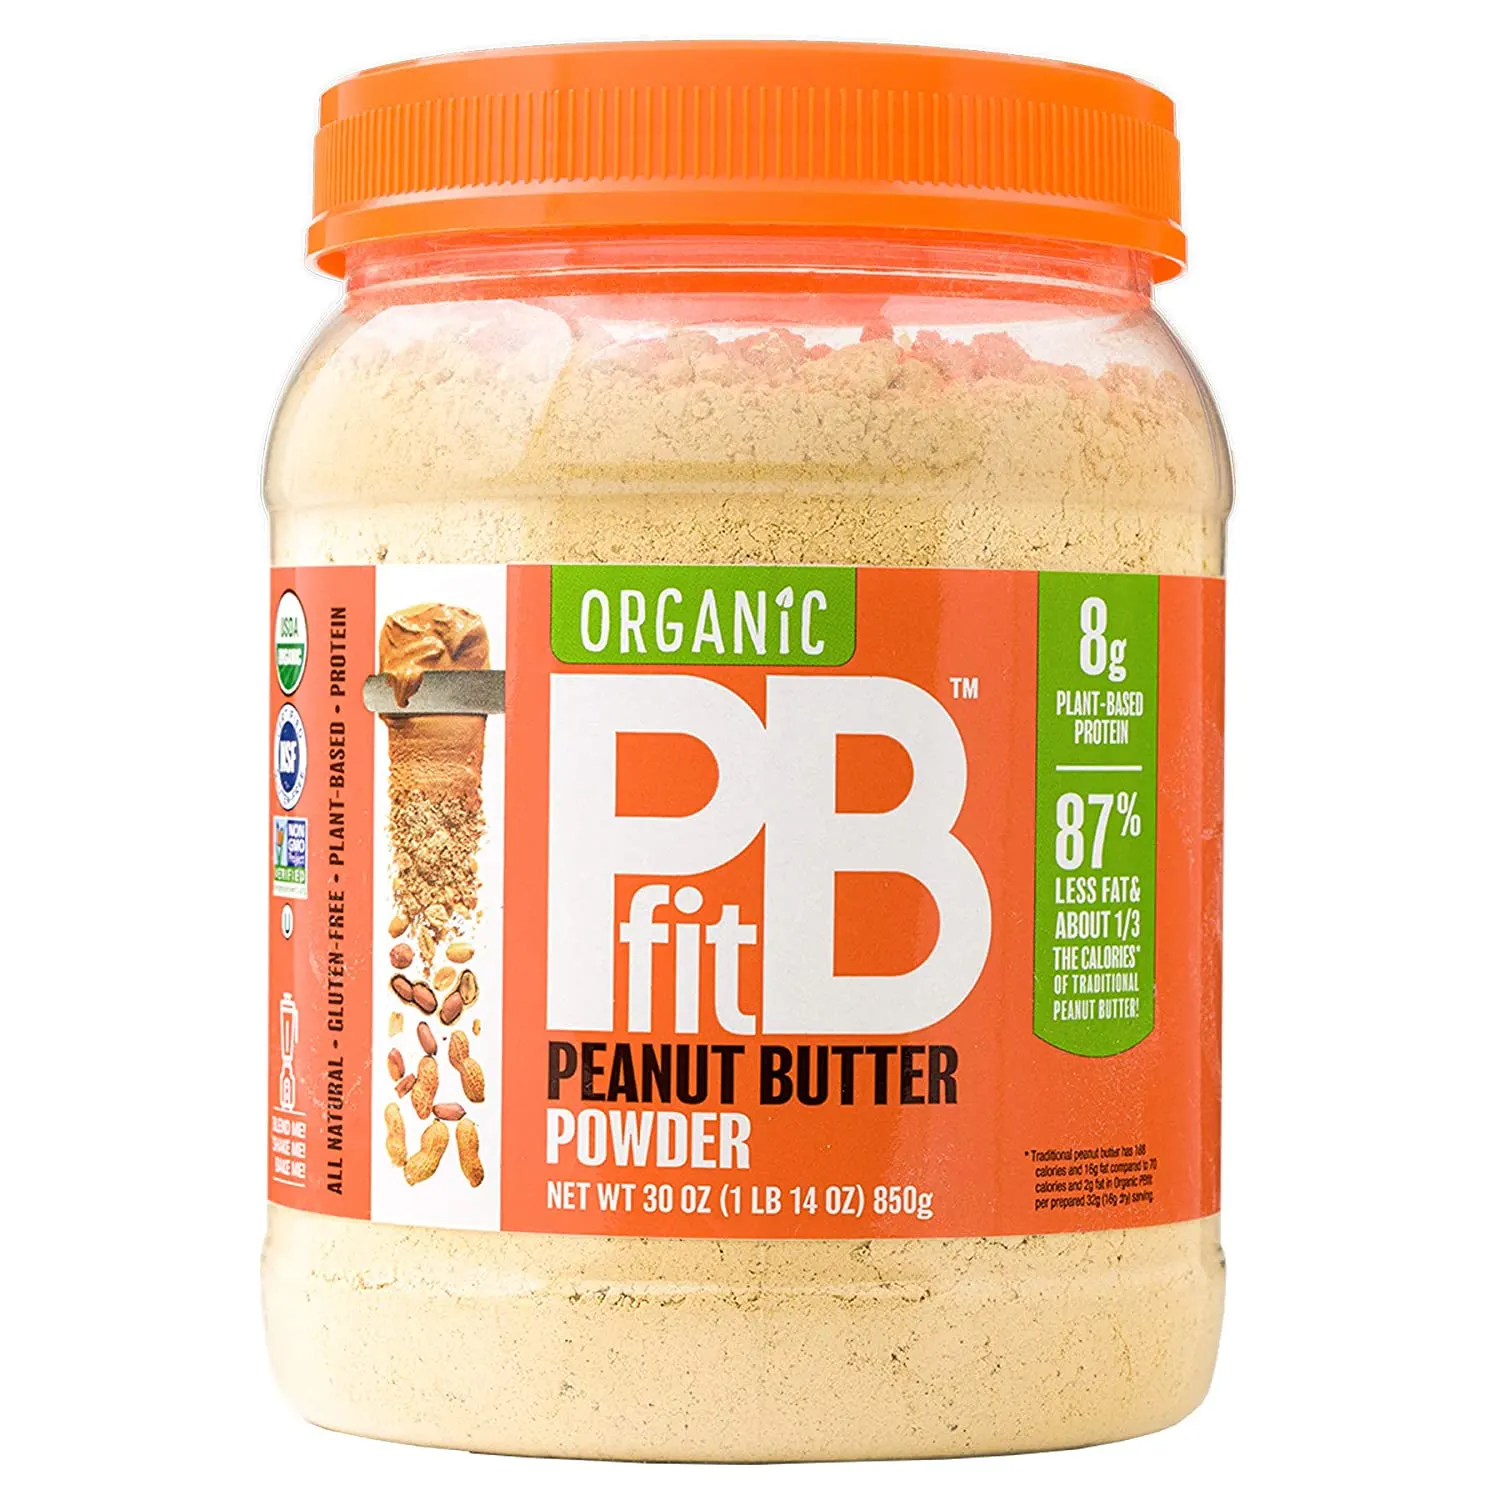 PBfit All-Natural Organic Peanut Butter Powder, Powdered Peanut Spread
